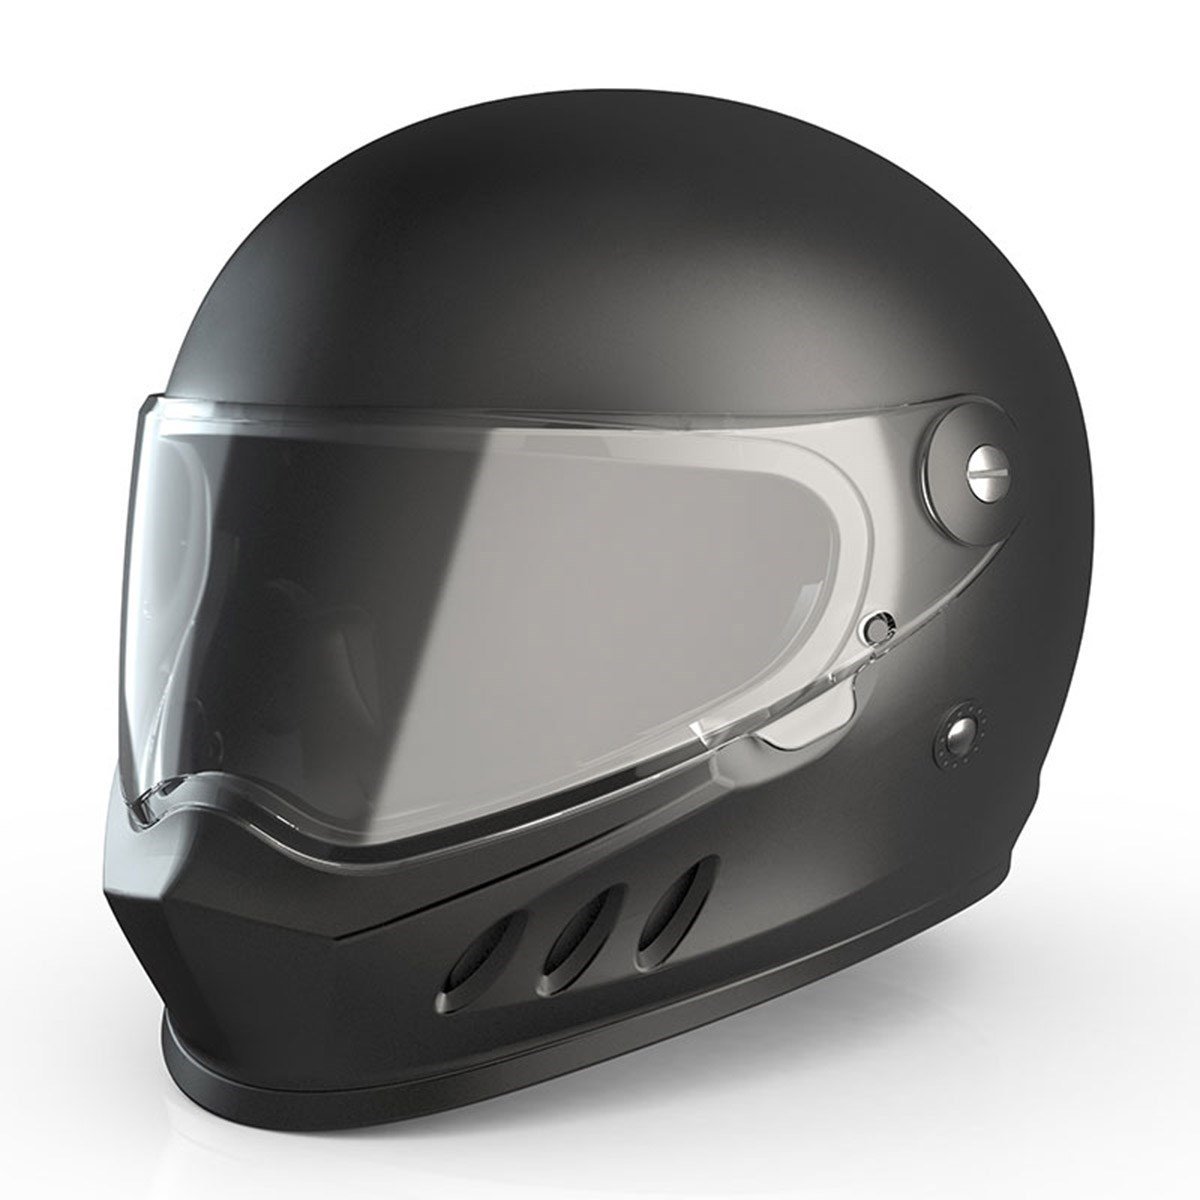 Sway 833 Full Face Motosiklet Kaski | Hızlı Teslimat ve Uygun Fiyat  Seçenekleri ile Vipmoto'da!